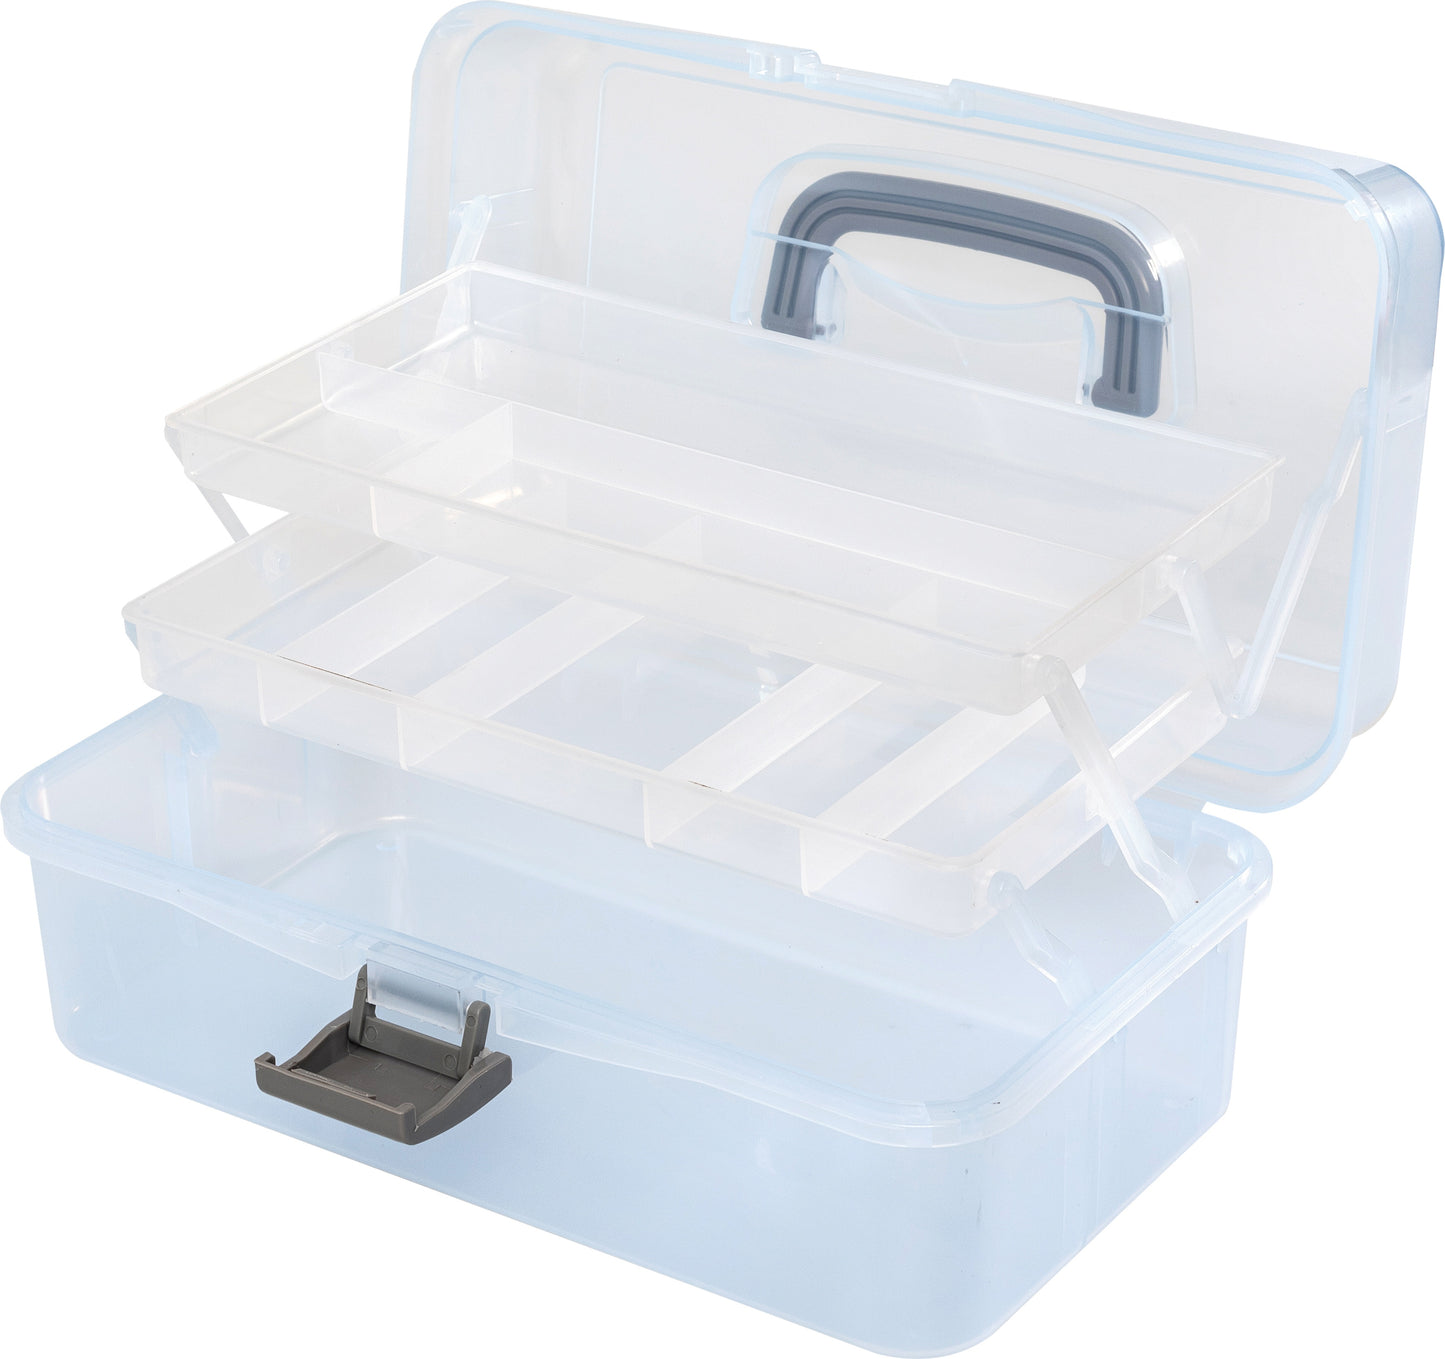 We R Craft Tool Box Translucent Plastic Storage-11.8"X6.7"X5.5" Case